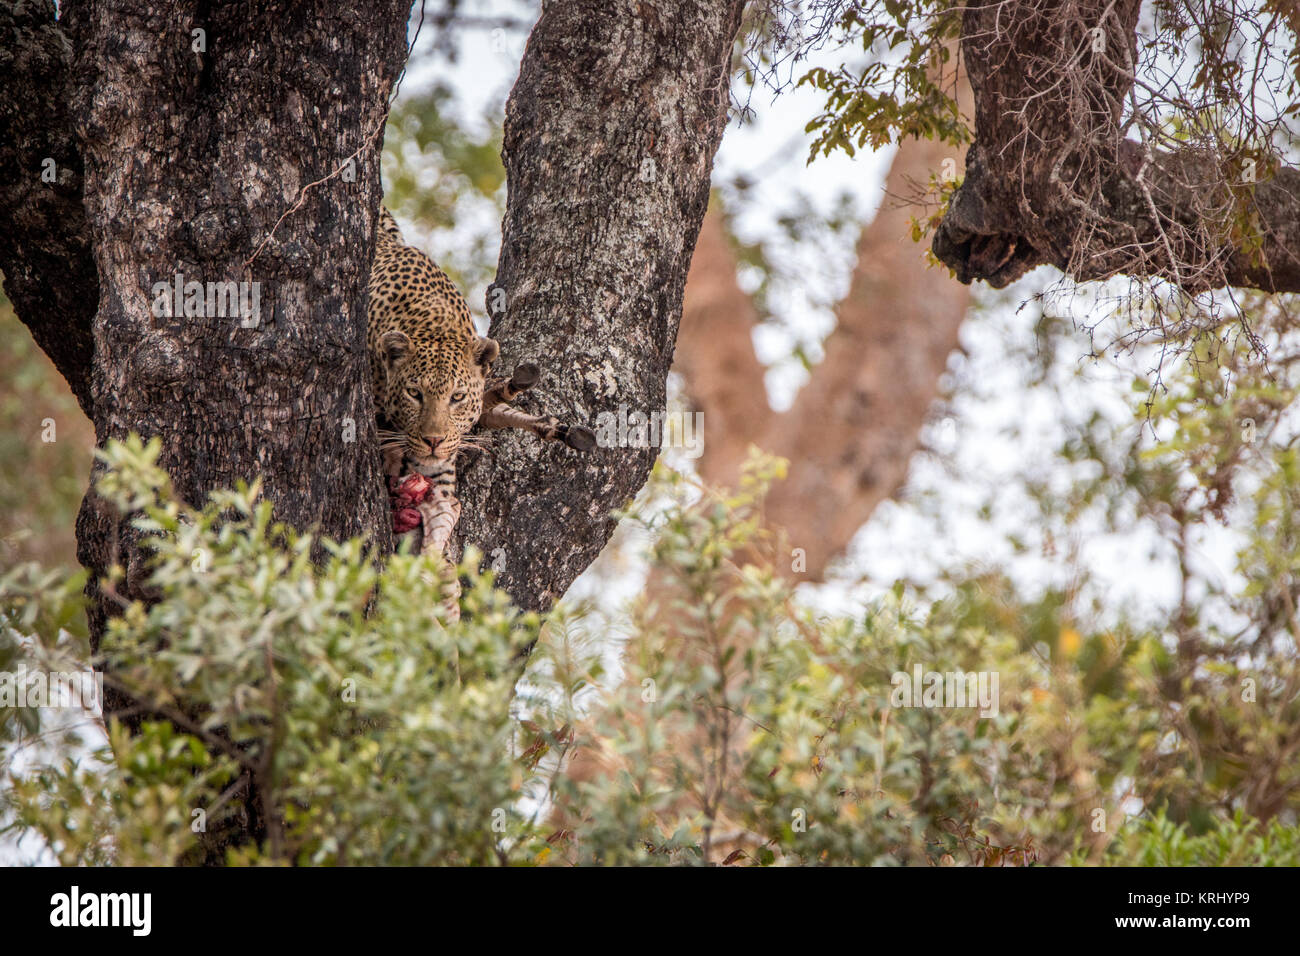 Leopard alimentándose de una cebra en un árbol. Foto de stock